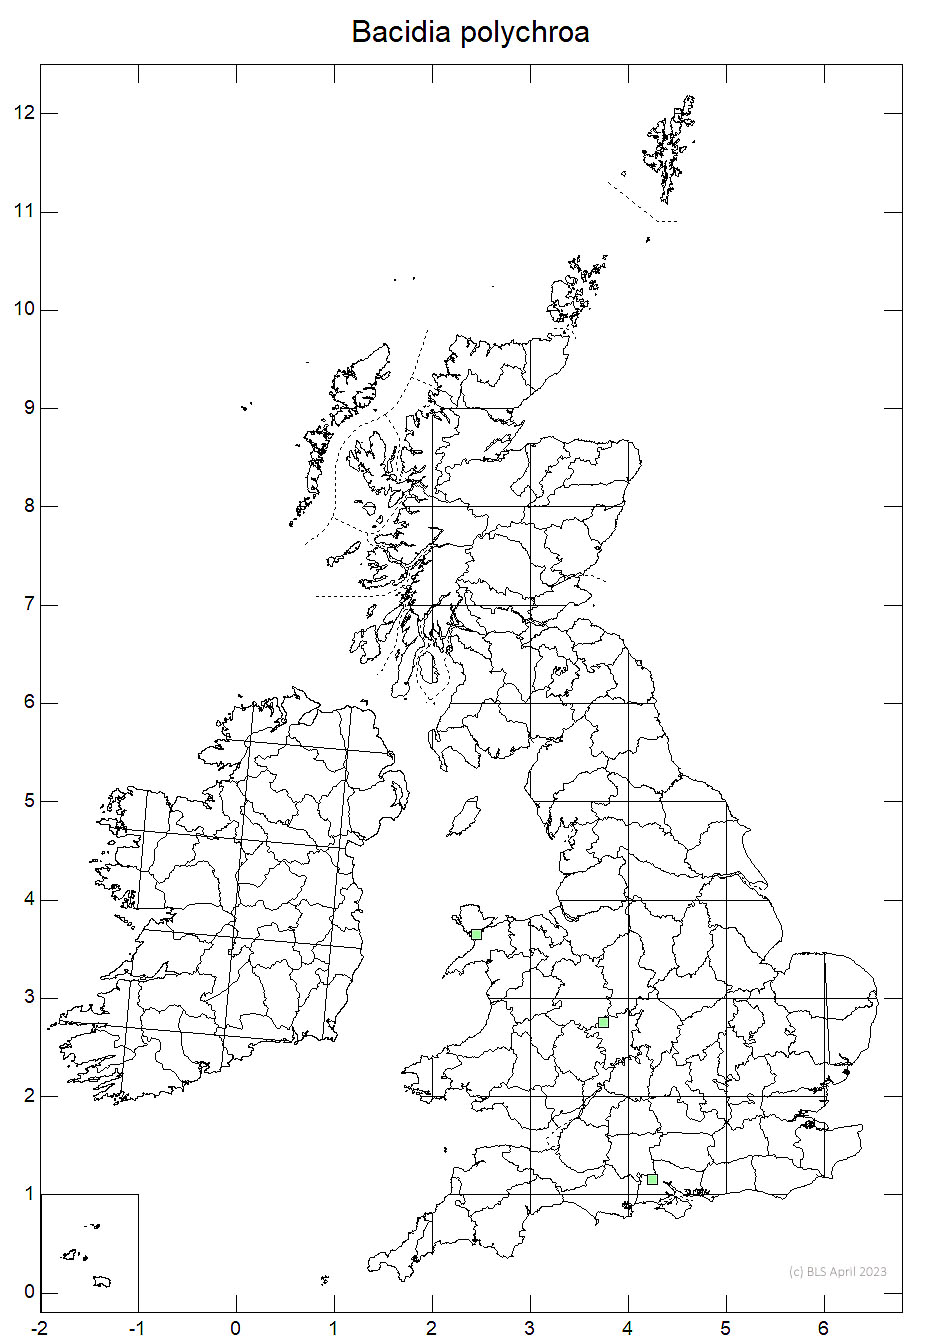 Bacidia polychroa 10km sq distribution map